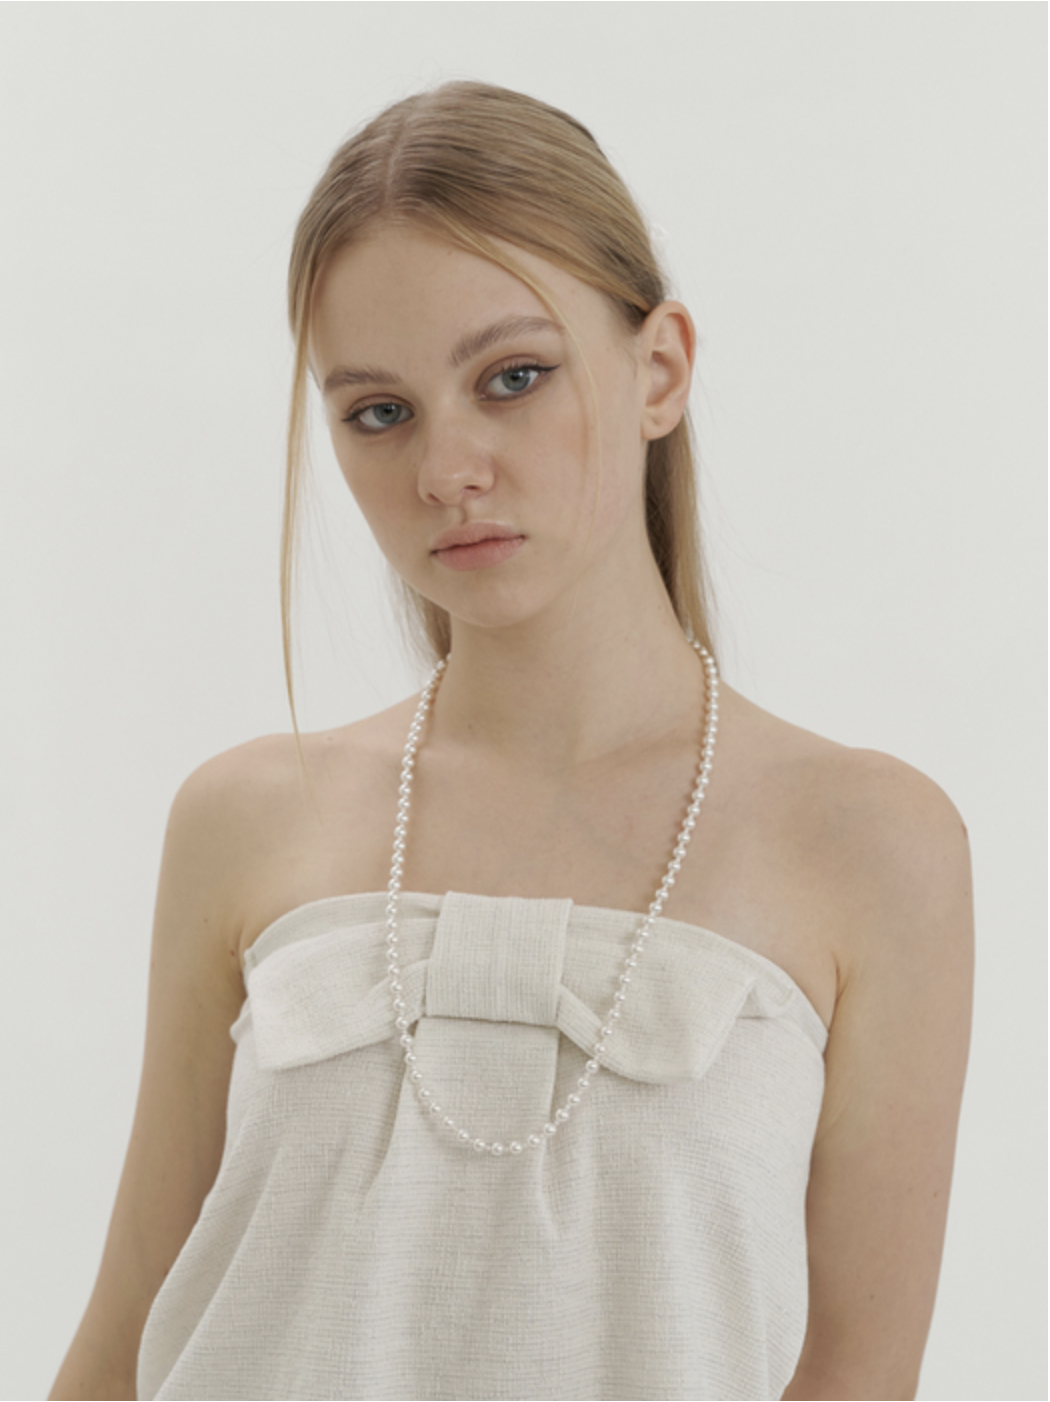 sophy white swarovski pearl necklace